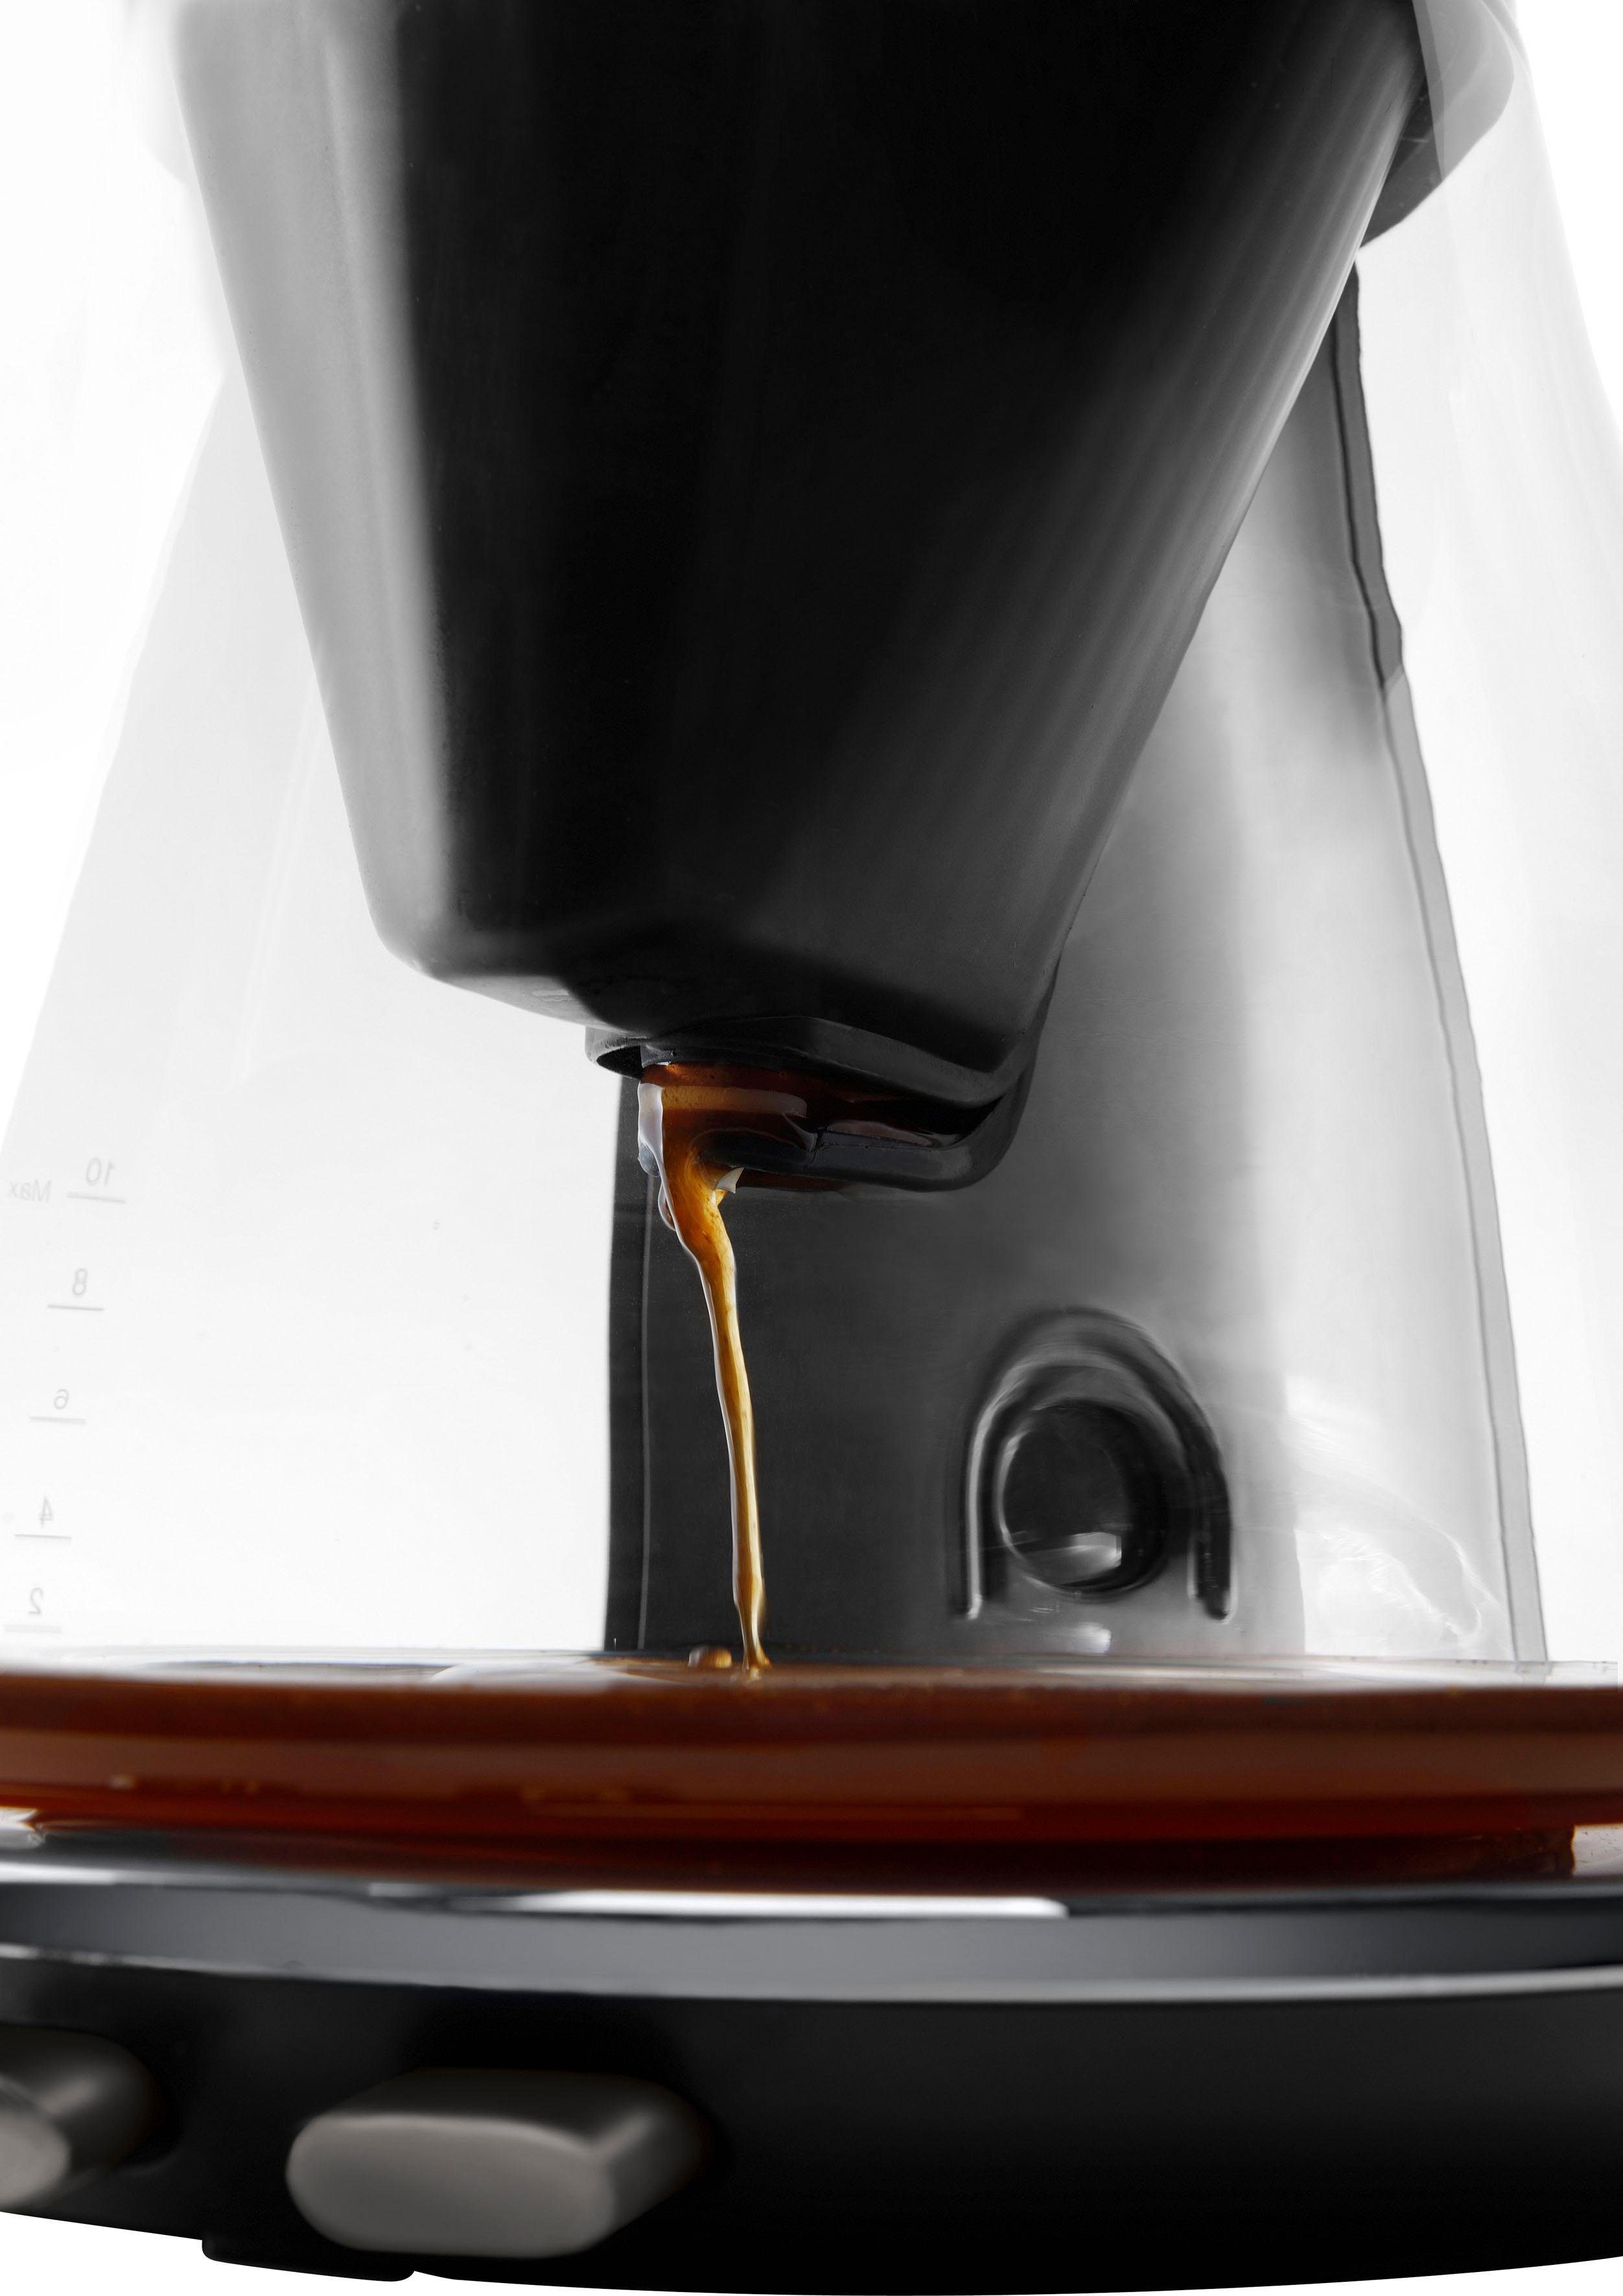 De'Longhi Filterkaffeemaschine Clessidra ICM 17210, Standard 1,25l Kaffeekanne, nach zertifiziertem Papierfilter, ECBE